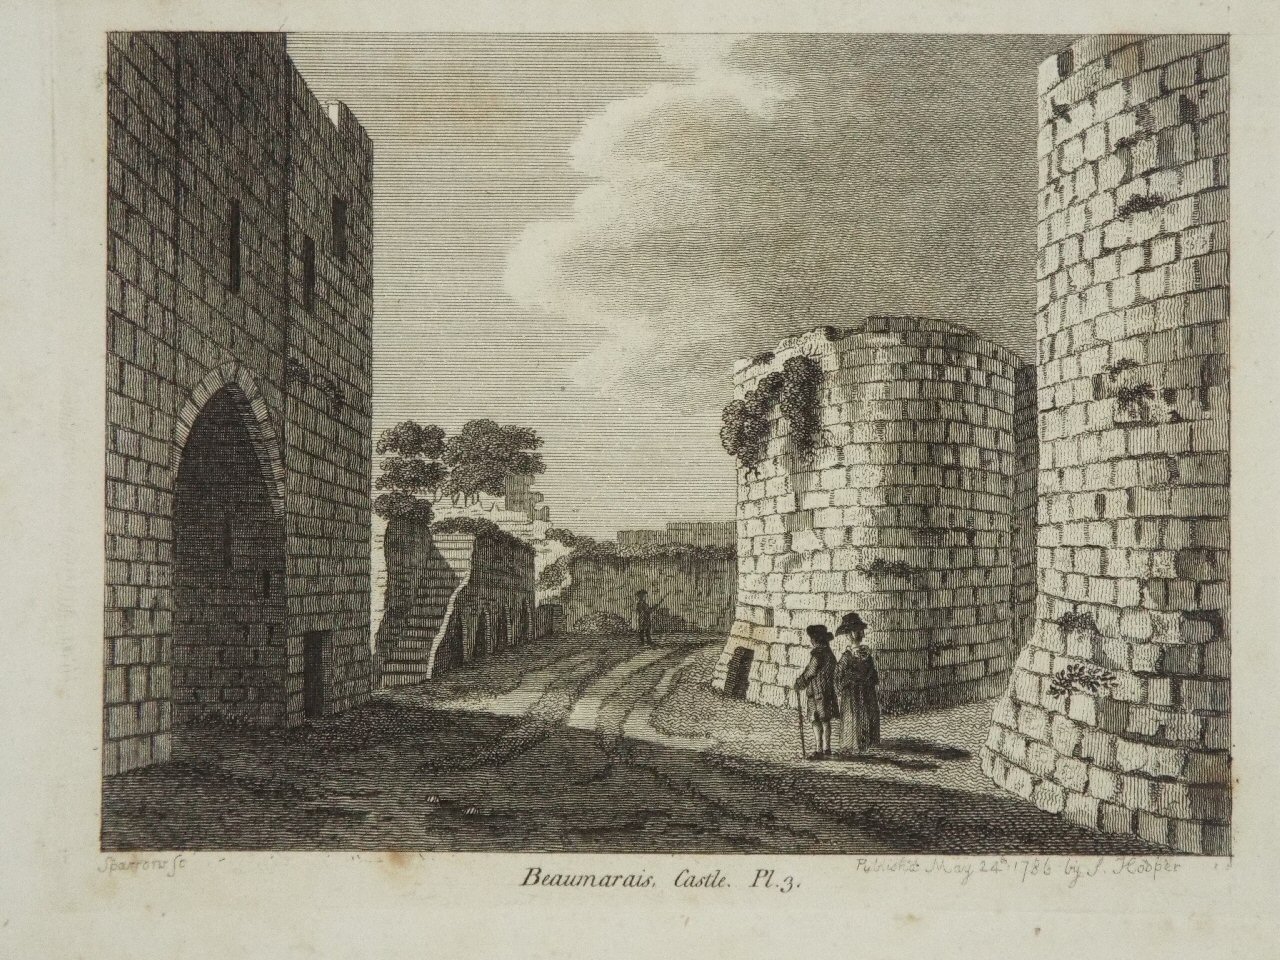 Print - Beaumaris, Castle. Pl.3. - 